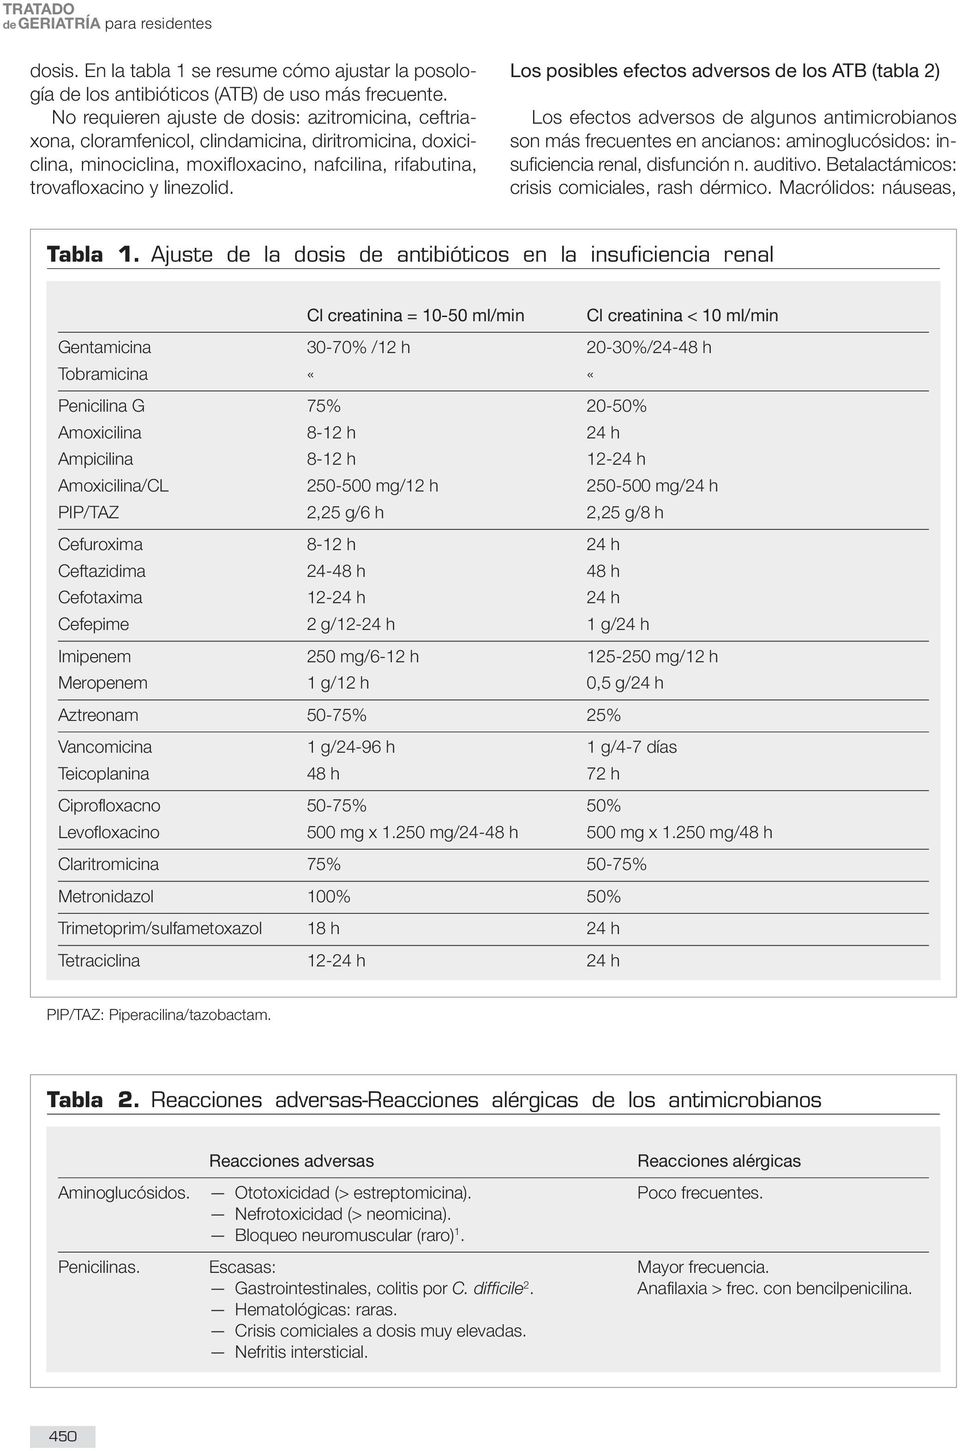 Los posibles efectos adversos de los ATB (tabla 2) Los efectos adversos de algunos antimicrobianos son más frecuentes en ancianos: aminoglucósidos: insuficiencia renal, disfunción n. auditivo.